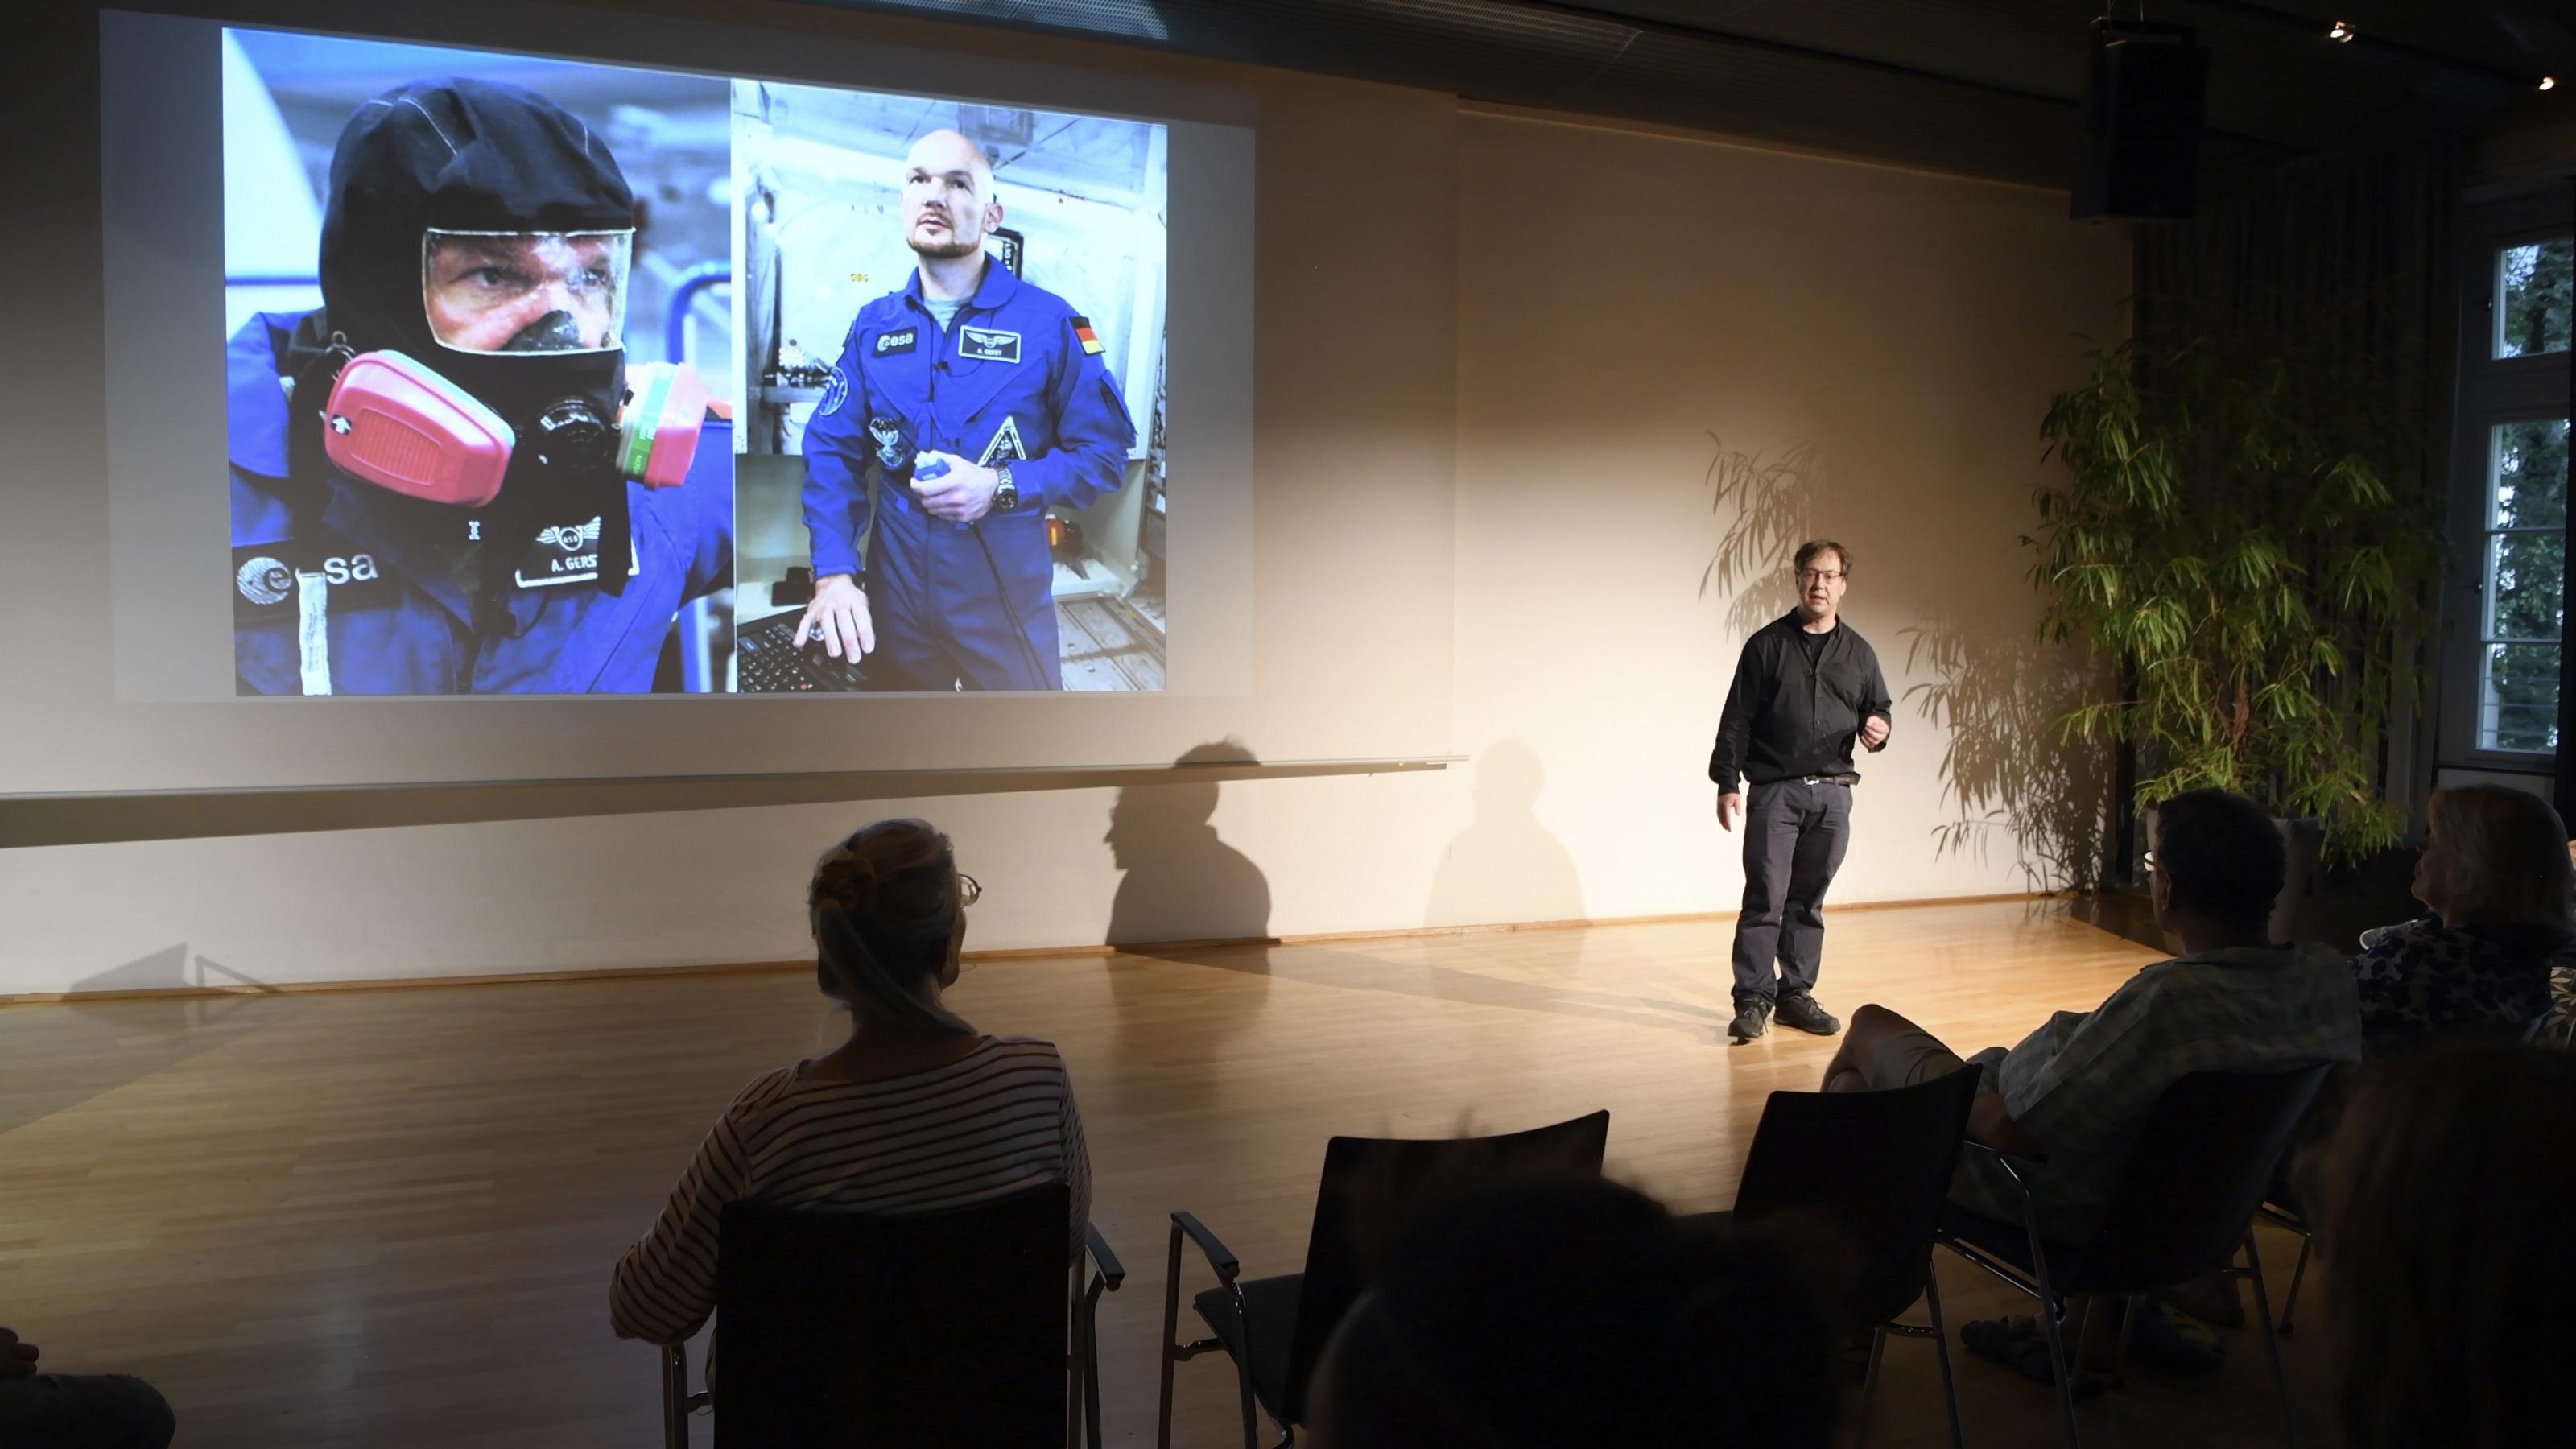 Christoph Otto auf einer Bühne, der Projektor zeigt zwei Bilder von Astronaut Alexander Gerst, eines davon mit Tauchermaske